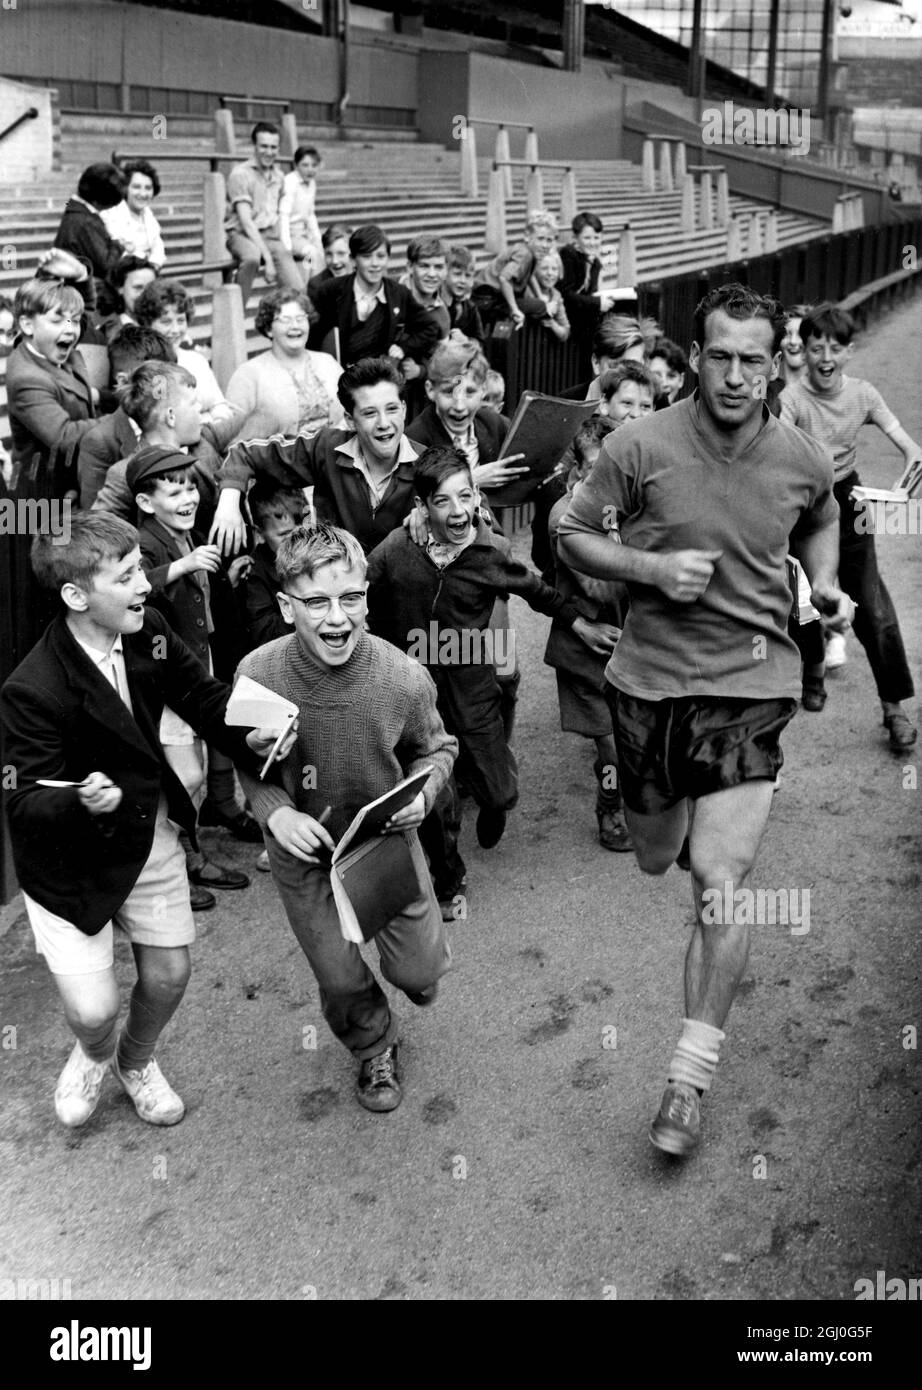 NAT Lofthouse ließ Autogrammjäger laufen, um ihn im Burnden Park zu fangen. NAT, der im Januar den Fußball aufgegeben hat, wird fit für ein Comeback mit Bolton Wanderers. August 1960 Stockfoto